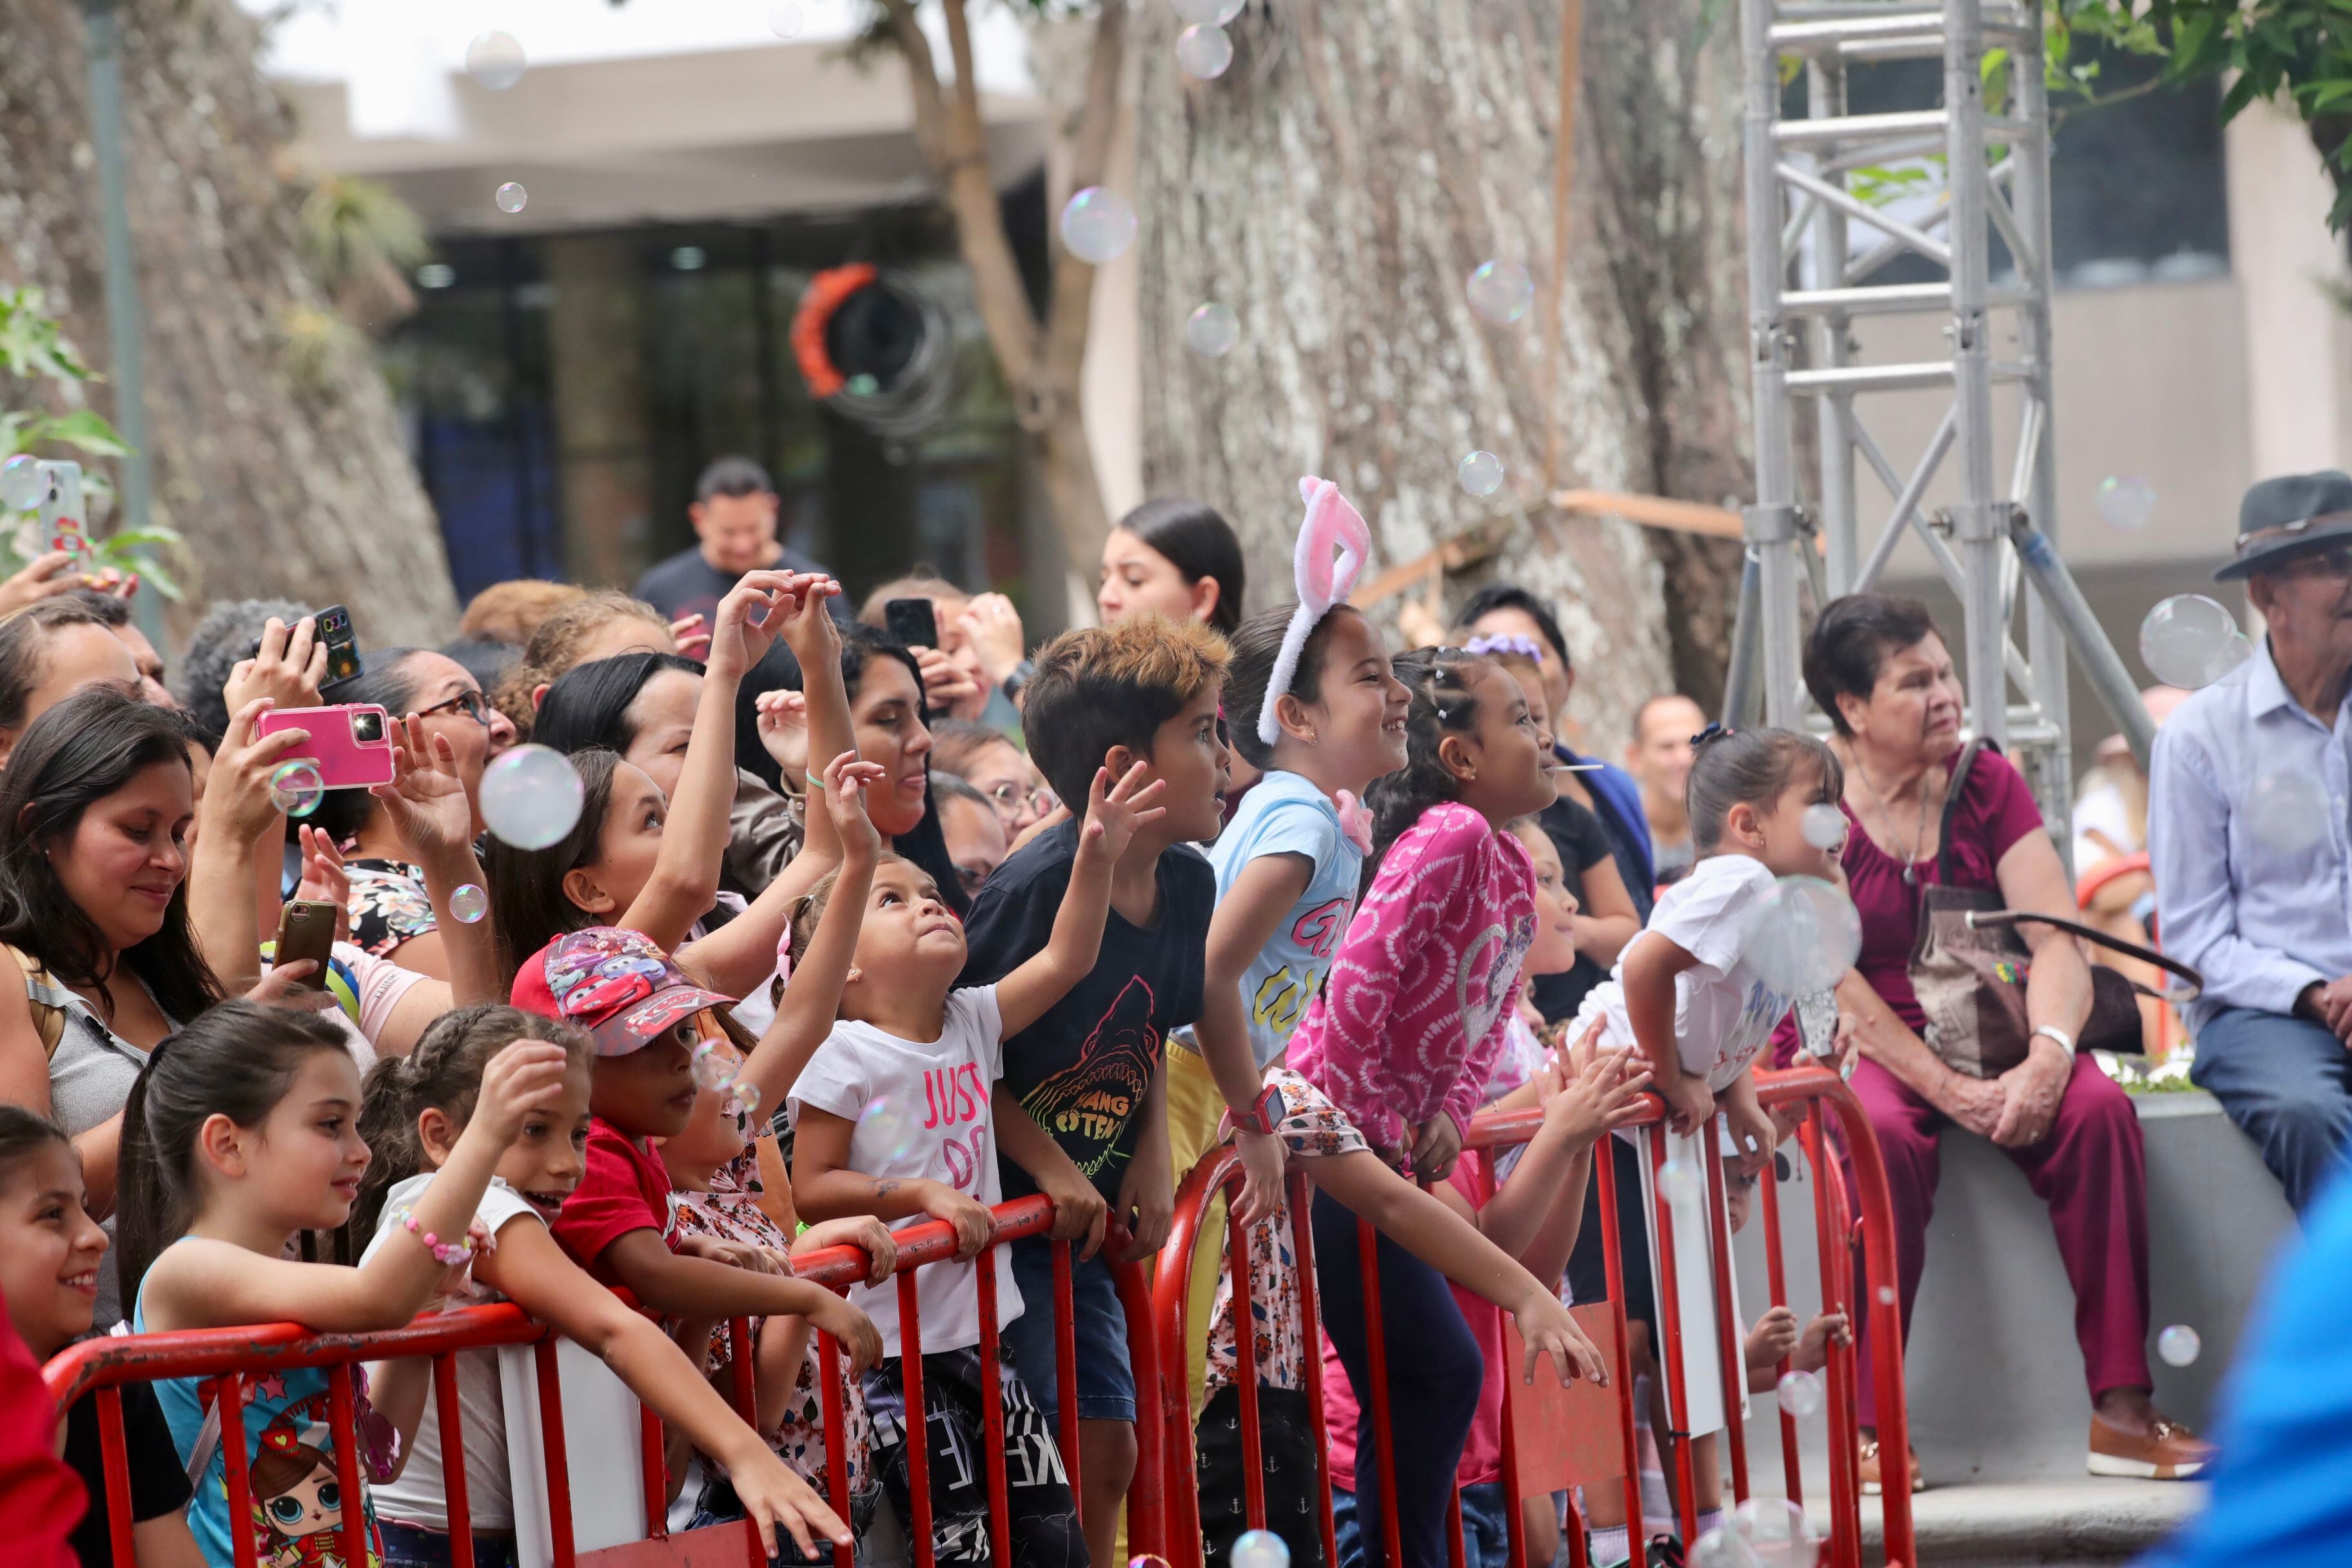 El festival ofrece una gran cantidad de actividades para la niñez. Este público colmado de menores disfrutó al máximo el show de Los Pirulos. Foto: Alonso Tenorio